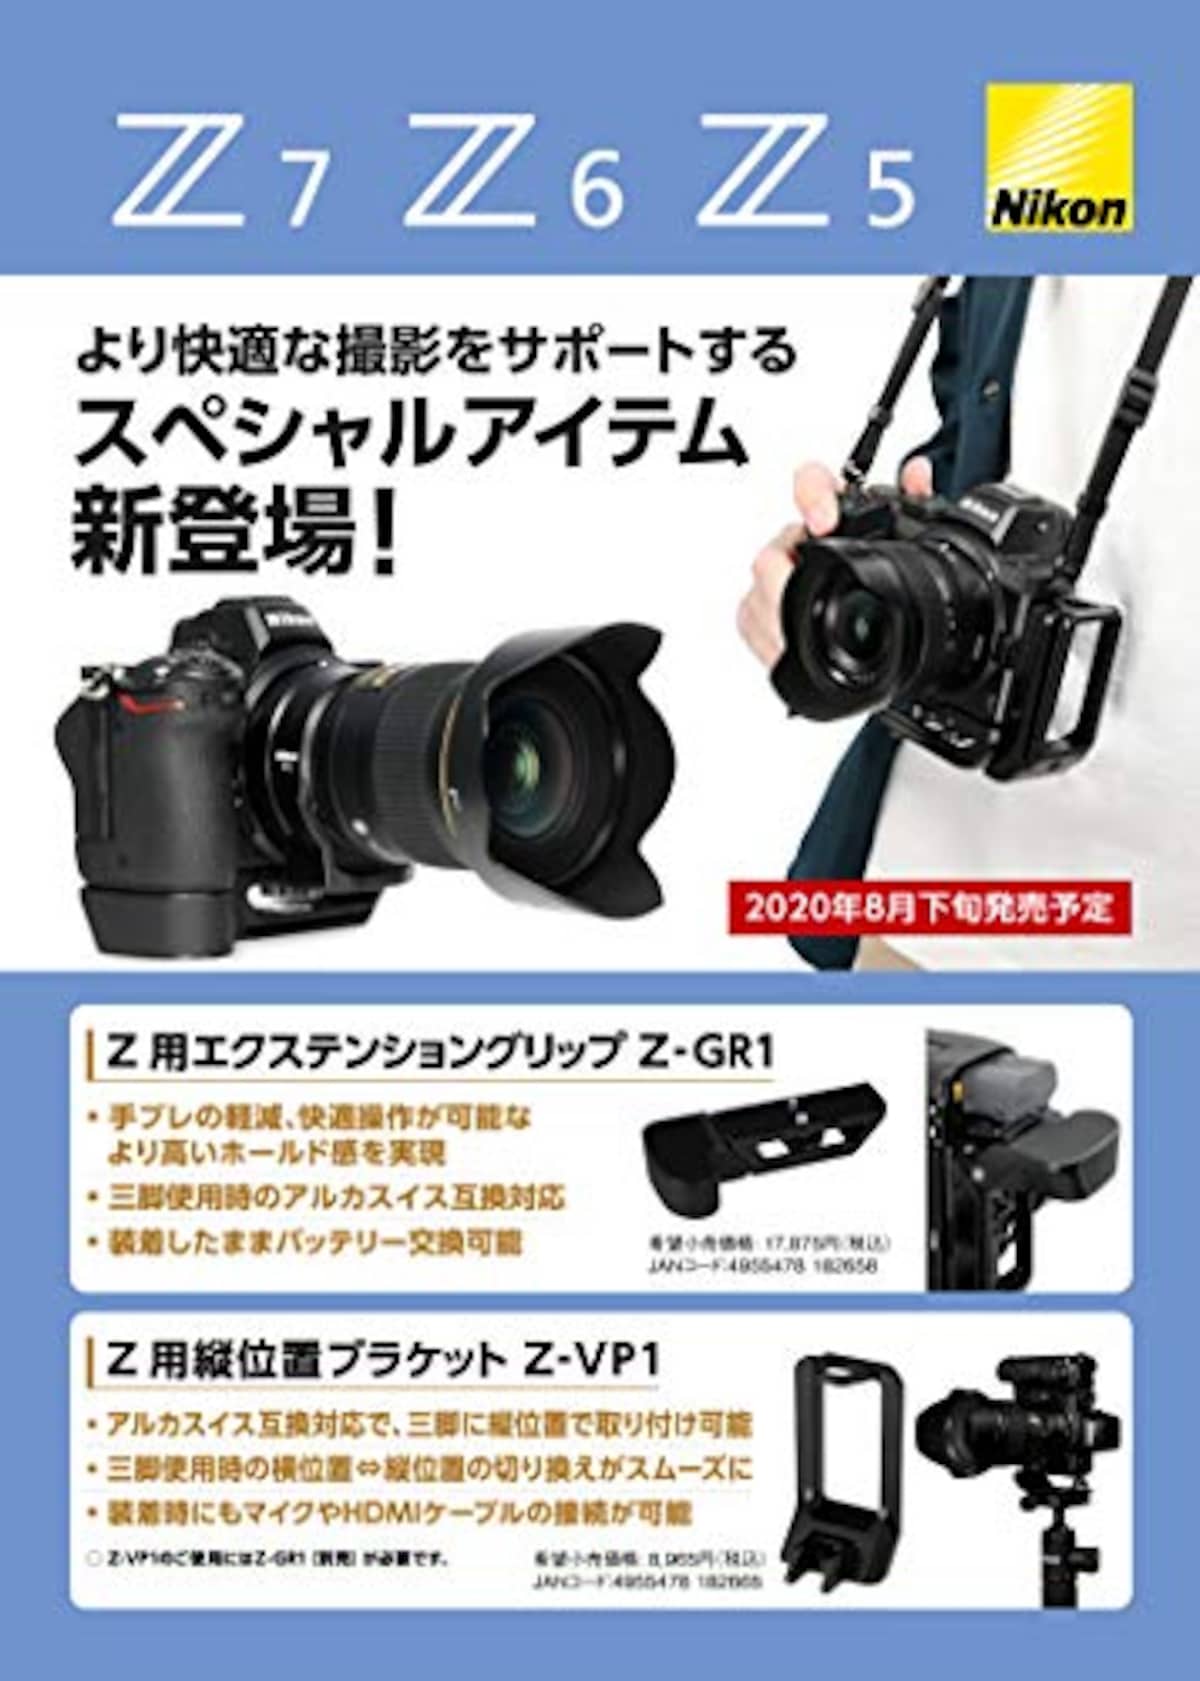  Nikon エクステンショングリップ Z-GR1 Z用 アルカスイス規格互換 ZGR1画像2 